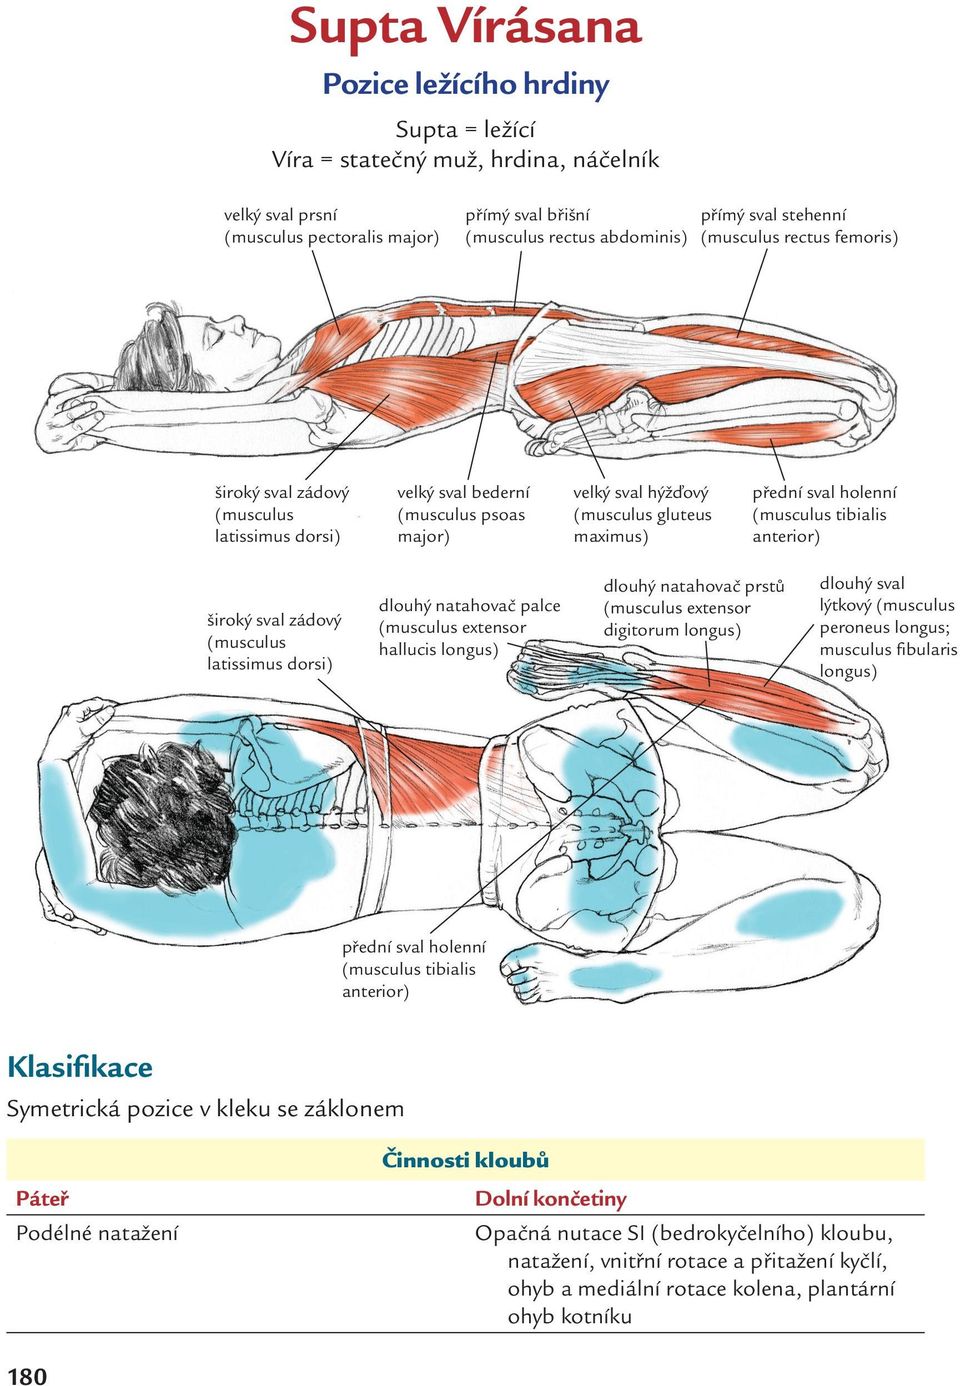 tibialis anterior) široký sval zádový (musculus latissimus dorsi) dlouhý natahovač palce (musculus extensor hallucis longus) dlouhý natahovač prstů (musculus extensor digitorum longus) dlouhý sval